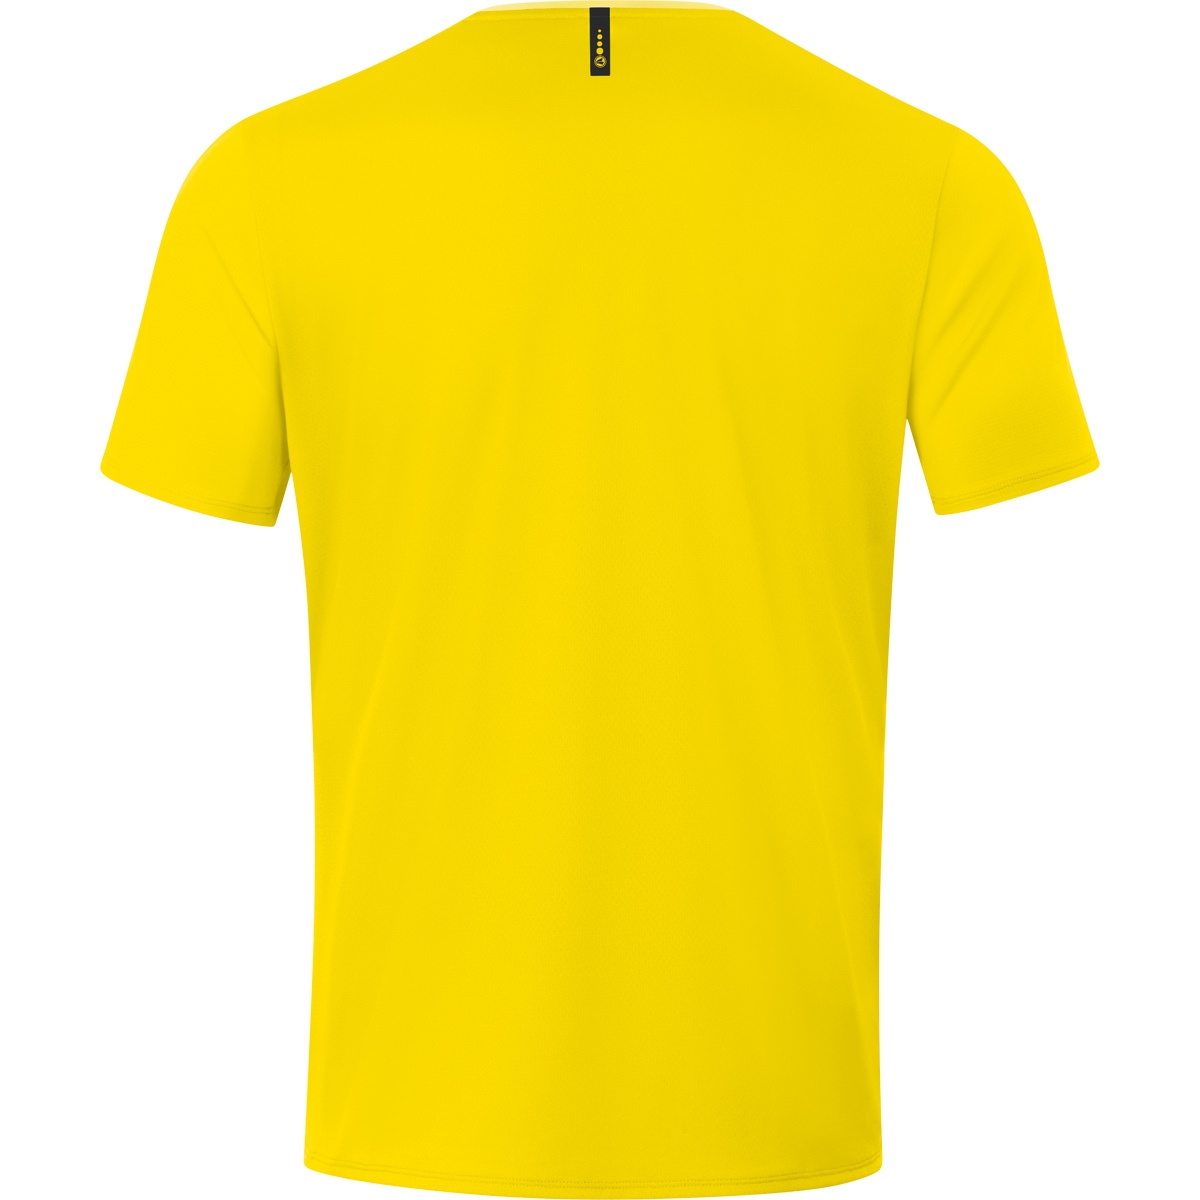 light, Gr. XXL, Champ T-Shirt 6120 2.0 JAKO Herren, citro/citro